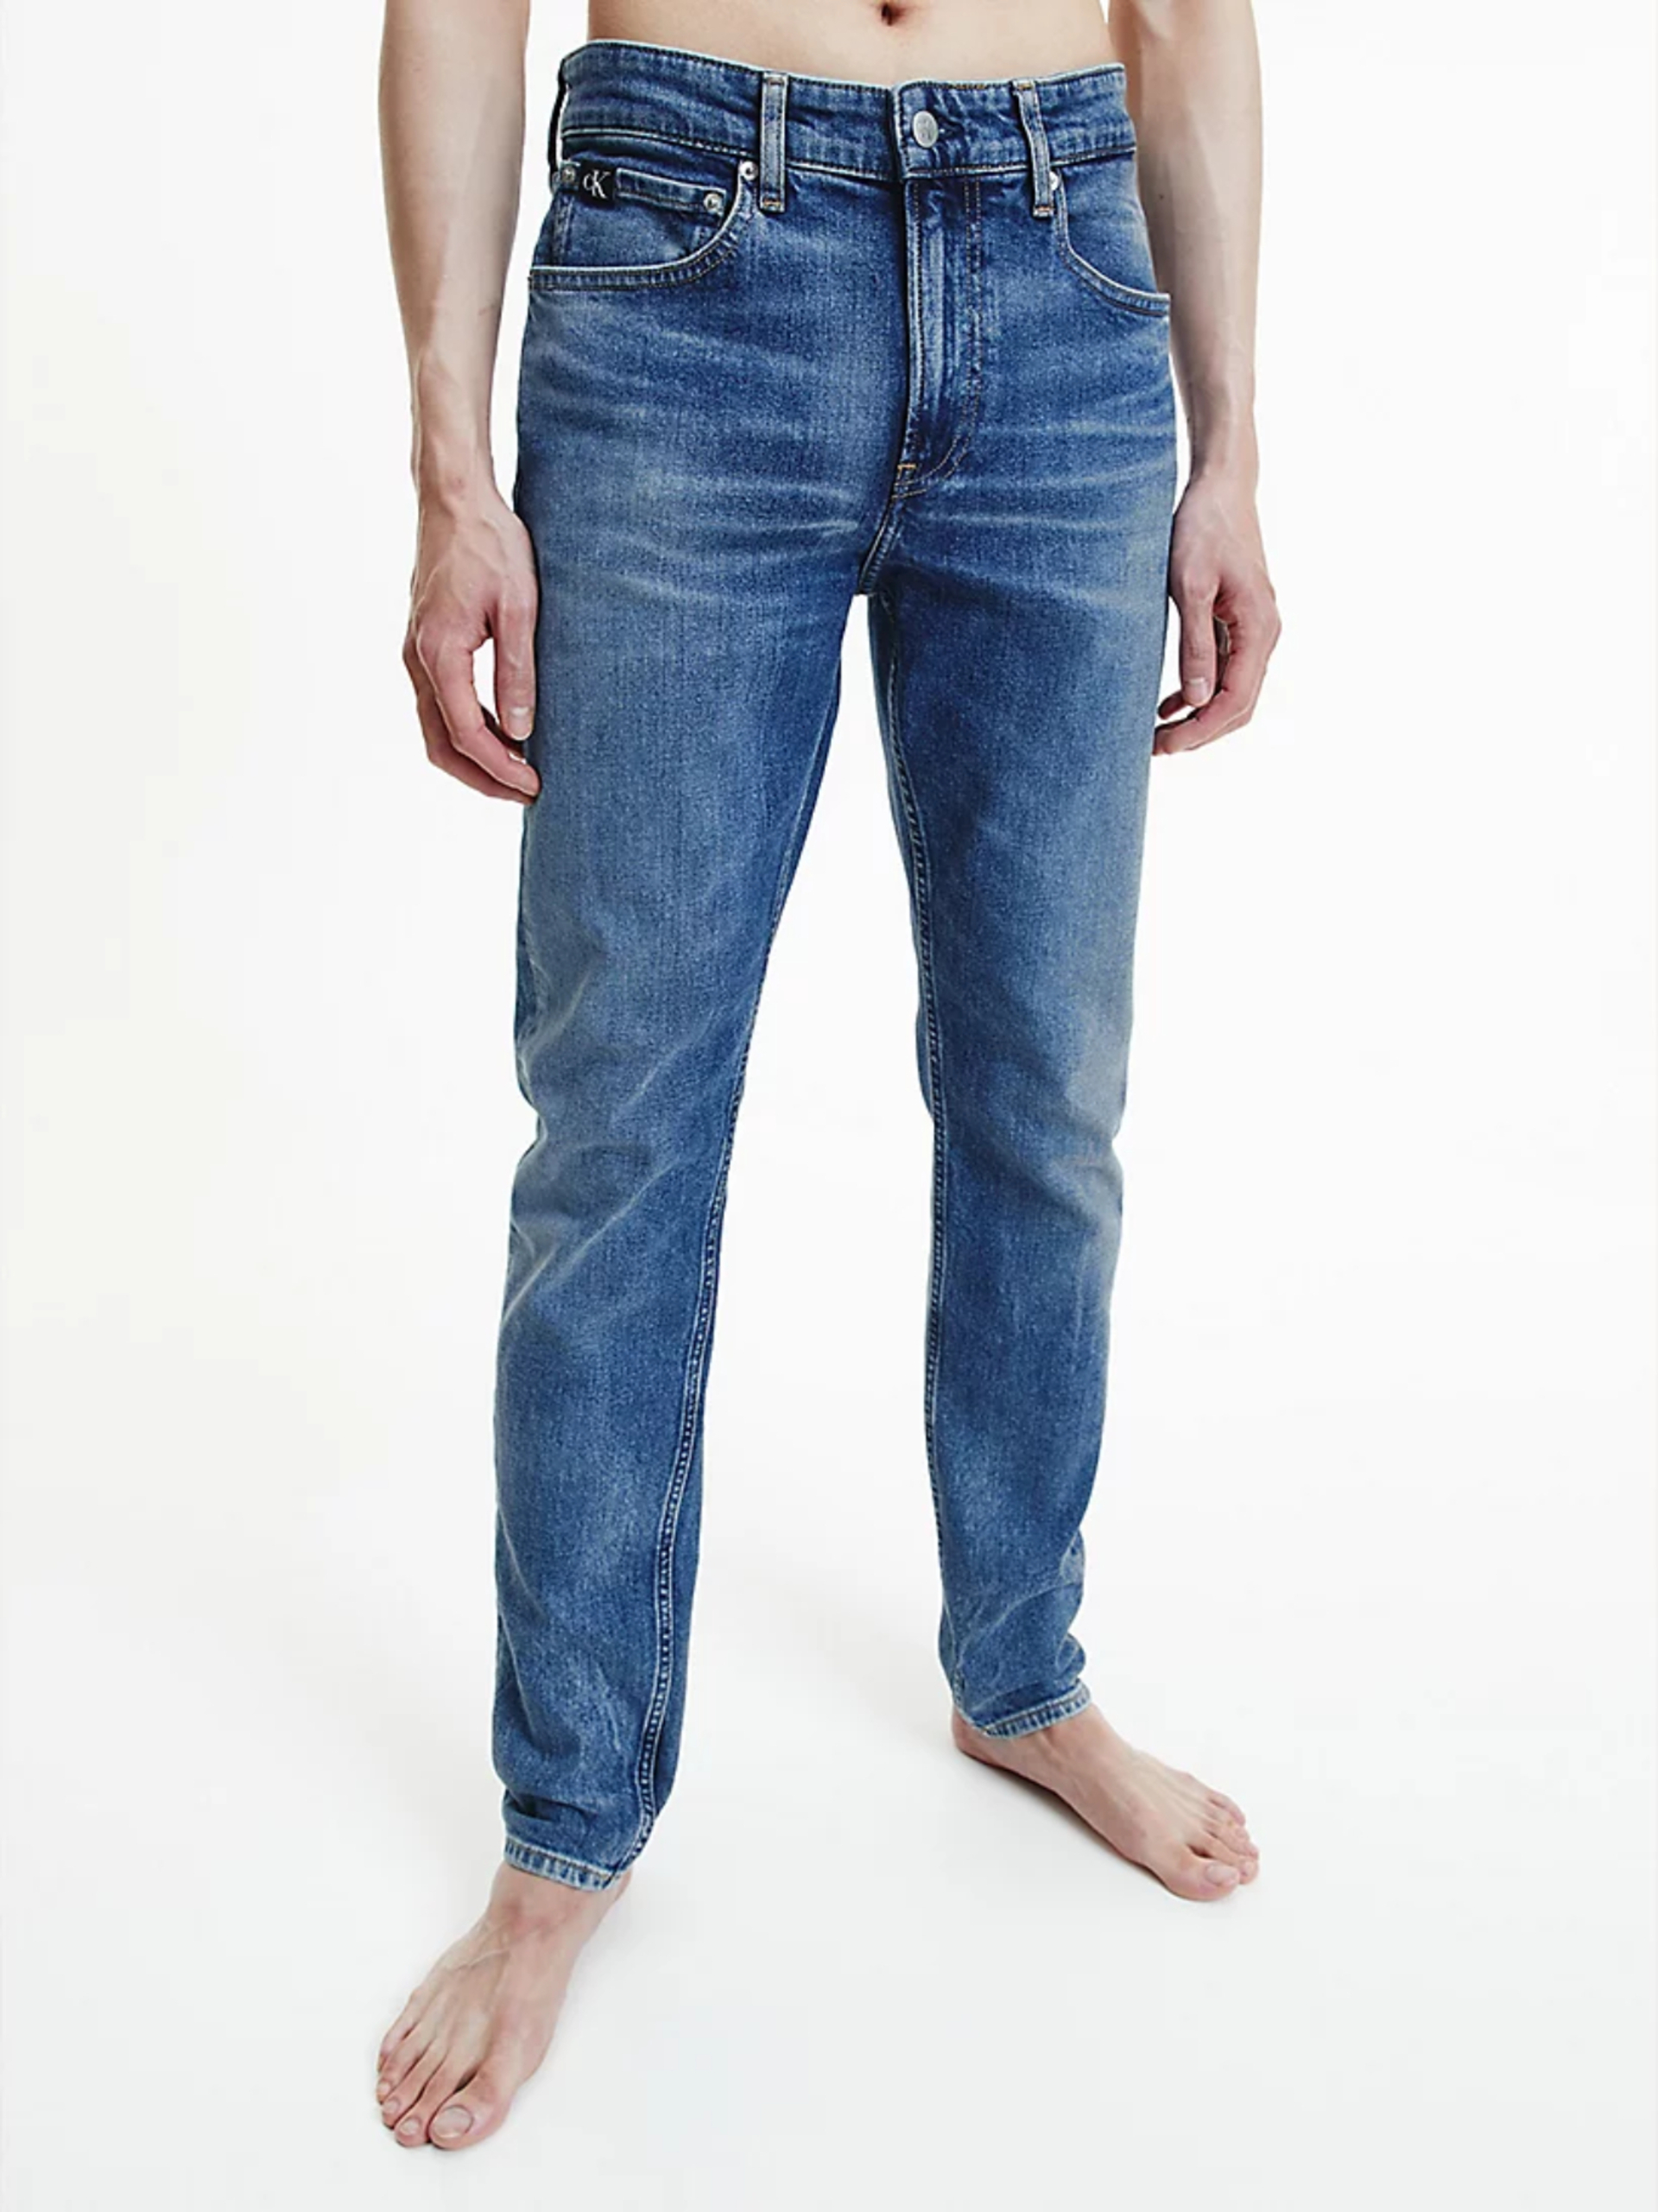 Calvin Klein pánské modré džíny - 34/32 (1A4)